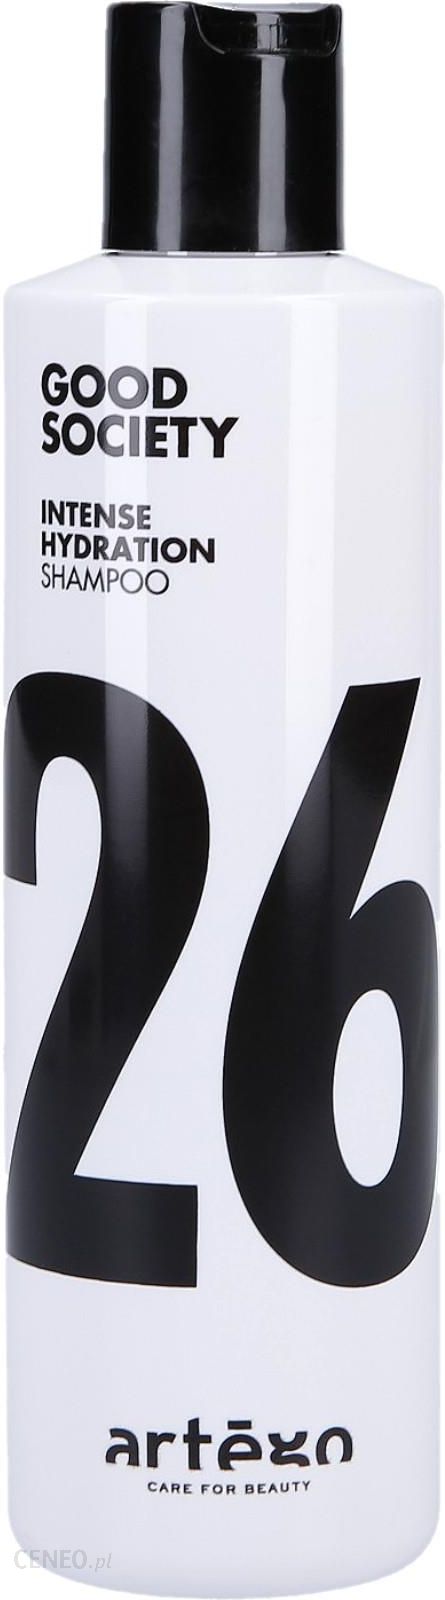 szampon artego 26 nawilżający